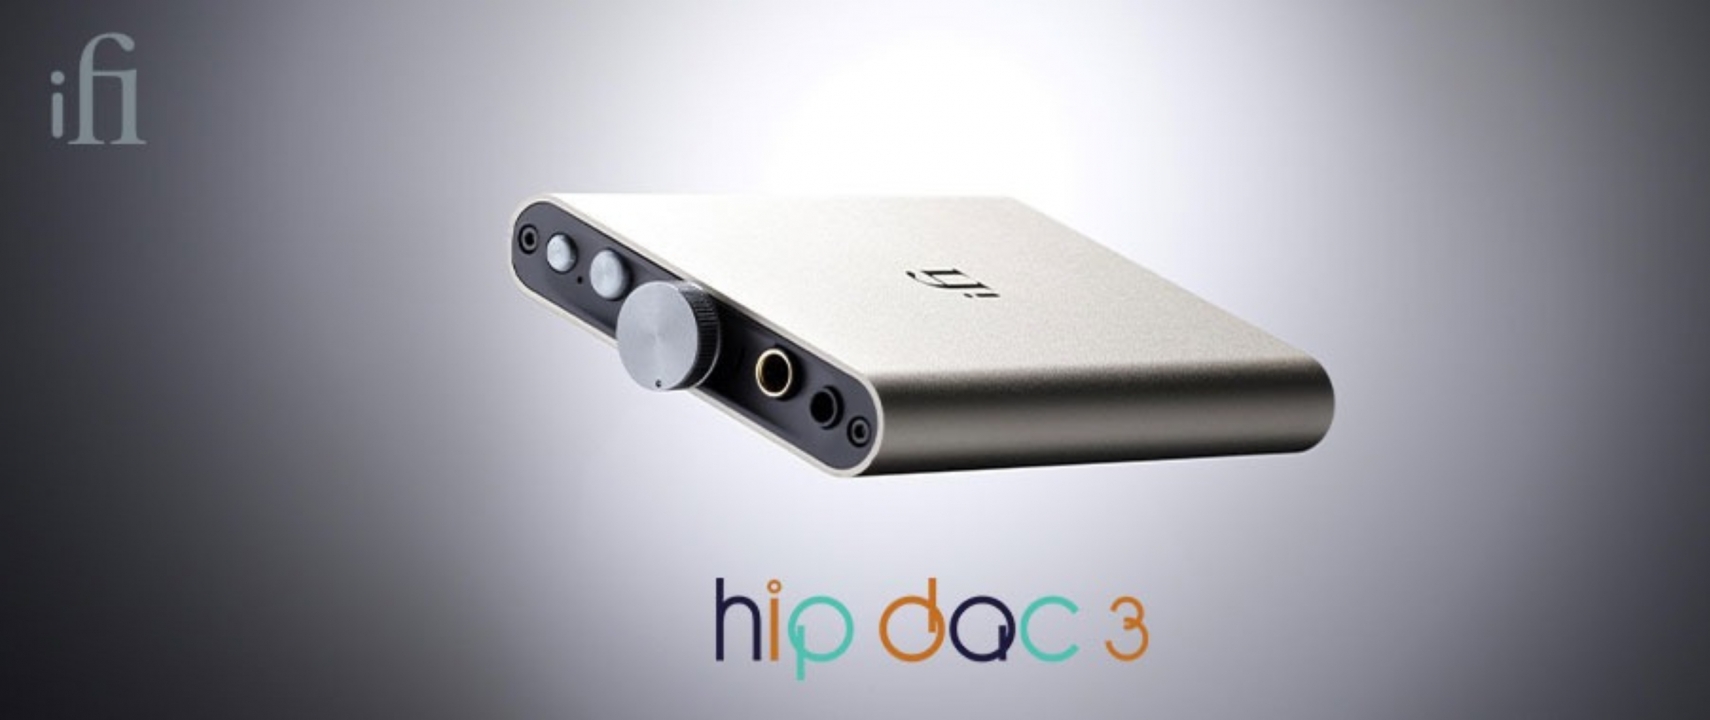 Đánh Giá Chi Tiết về Portable DAC/AMP iFi Hip Dac 3